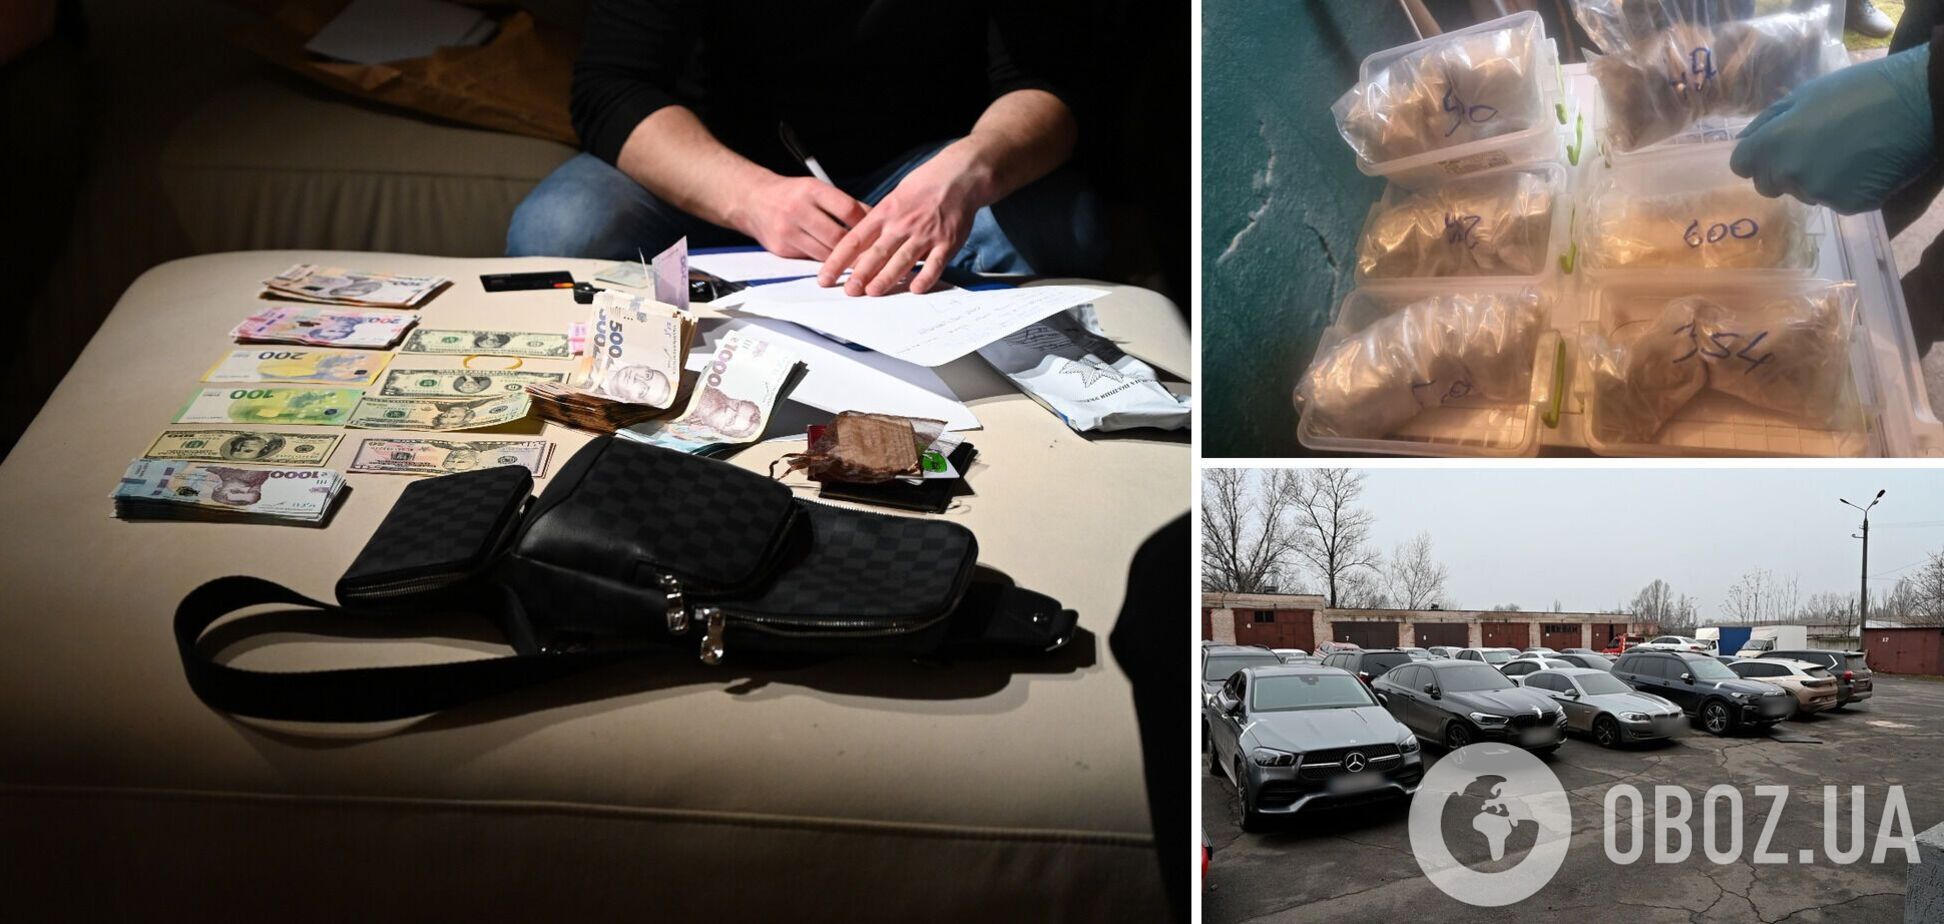 'Обеспечивали' наркотиками почти всю Украину: правоохранители разоблачили наркокартель с месячной прибылью в $1 миллион. Фото и все детали